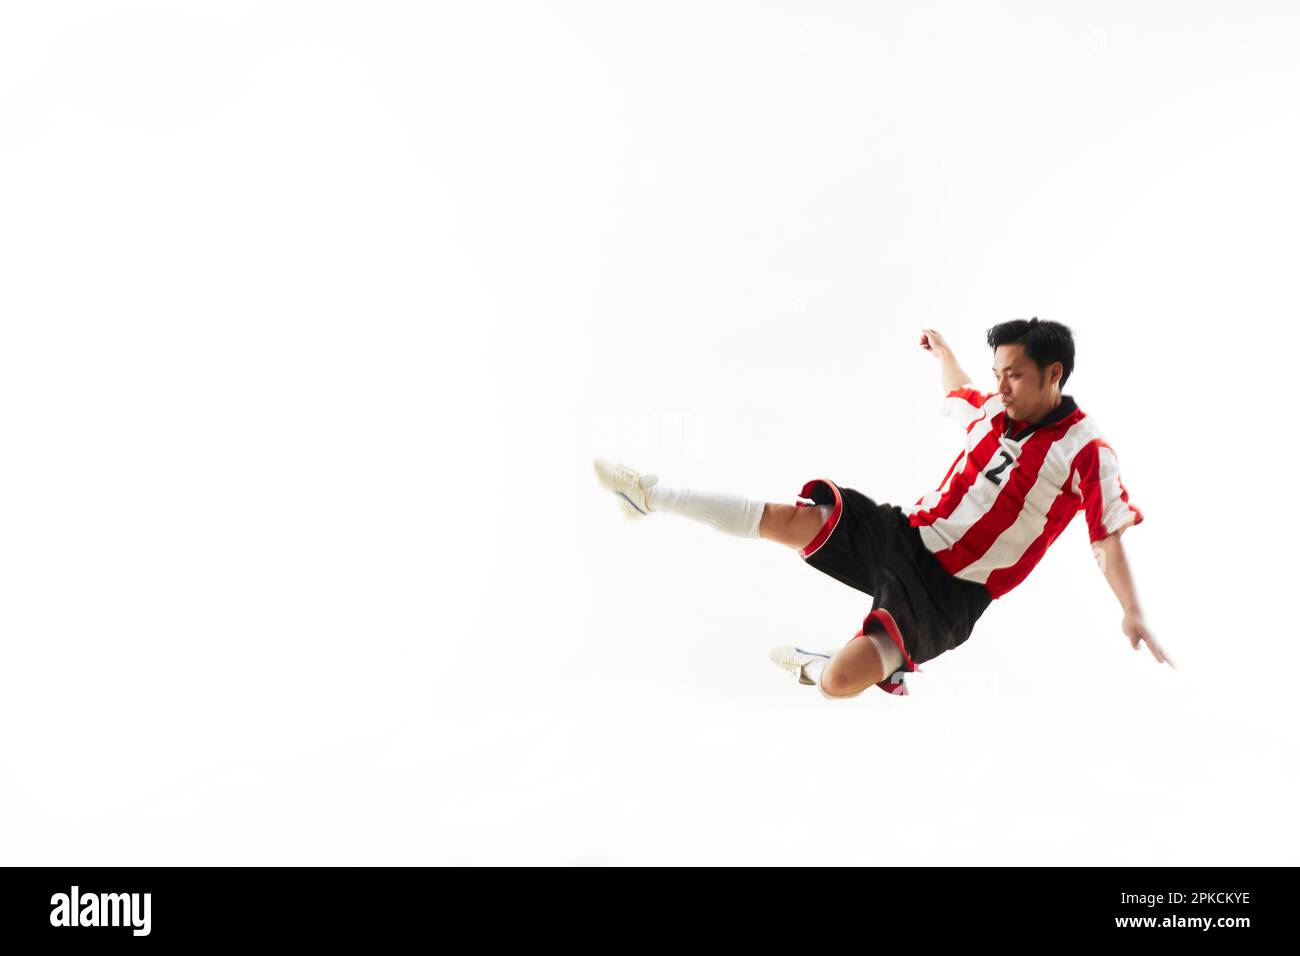 Soccer player sliding Stock Photo